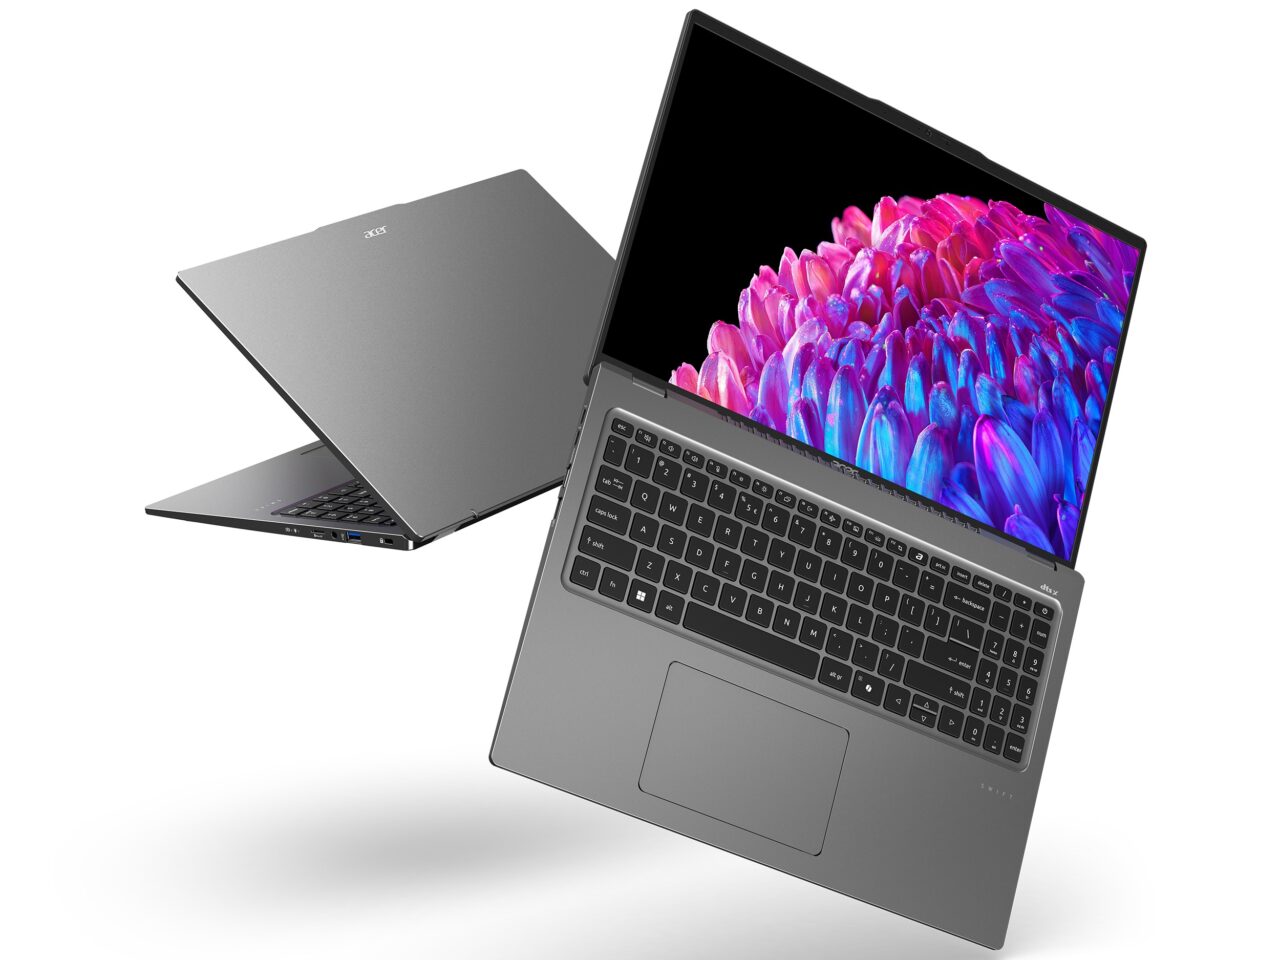 Dwa srebrne laptopy marki Acer ustawione jeden za drugim pod kątem, z kolorowymi kwiatami na ekranach.